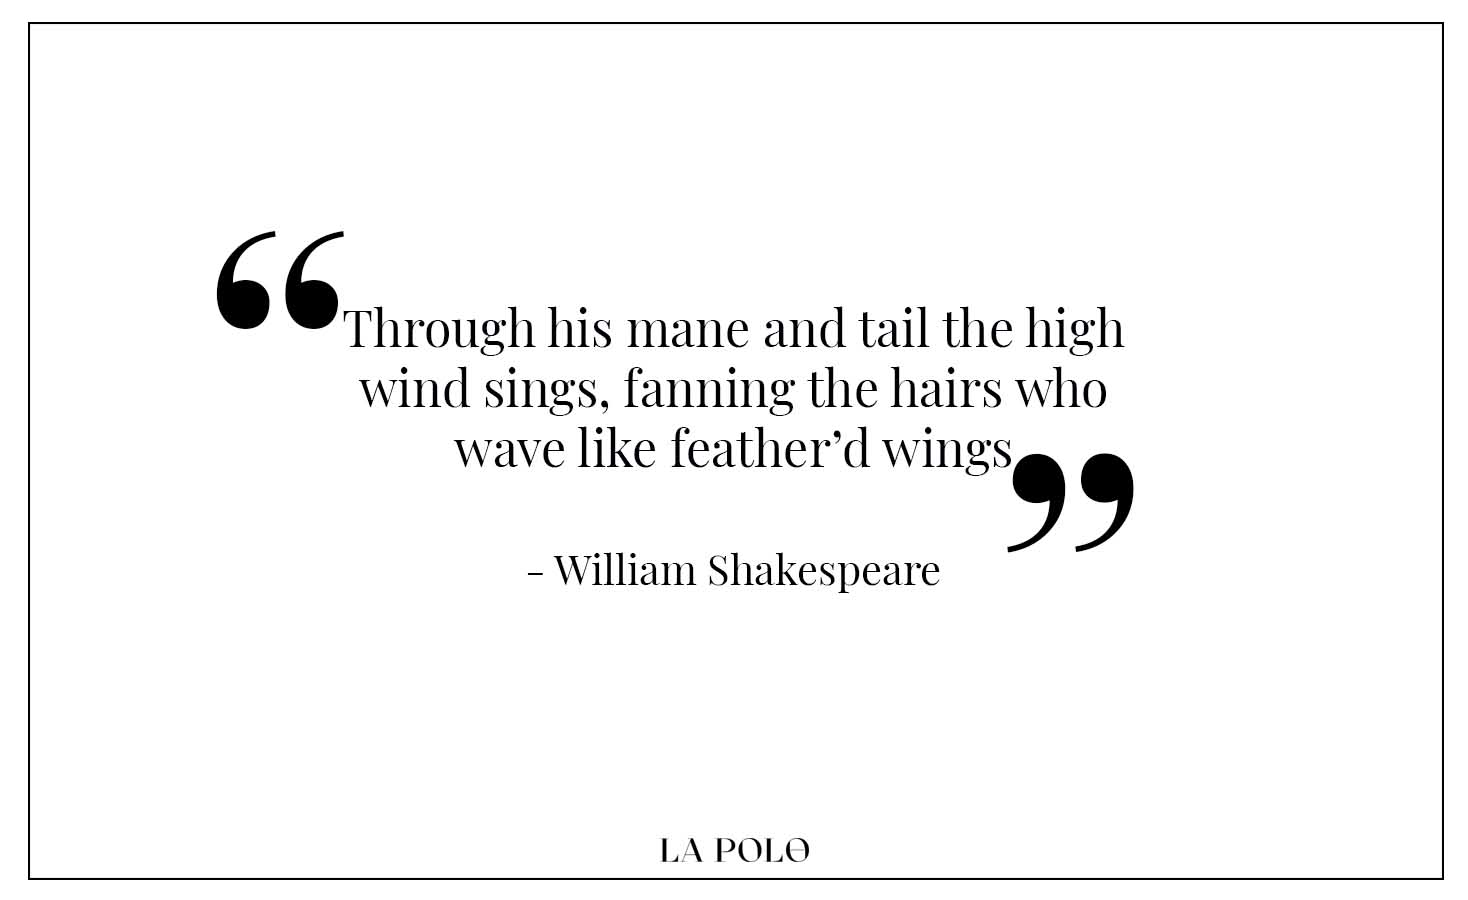 William Shakespeare quotes